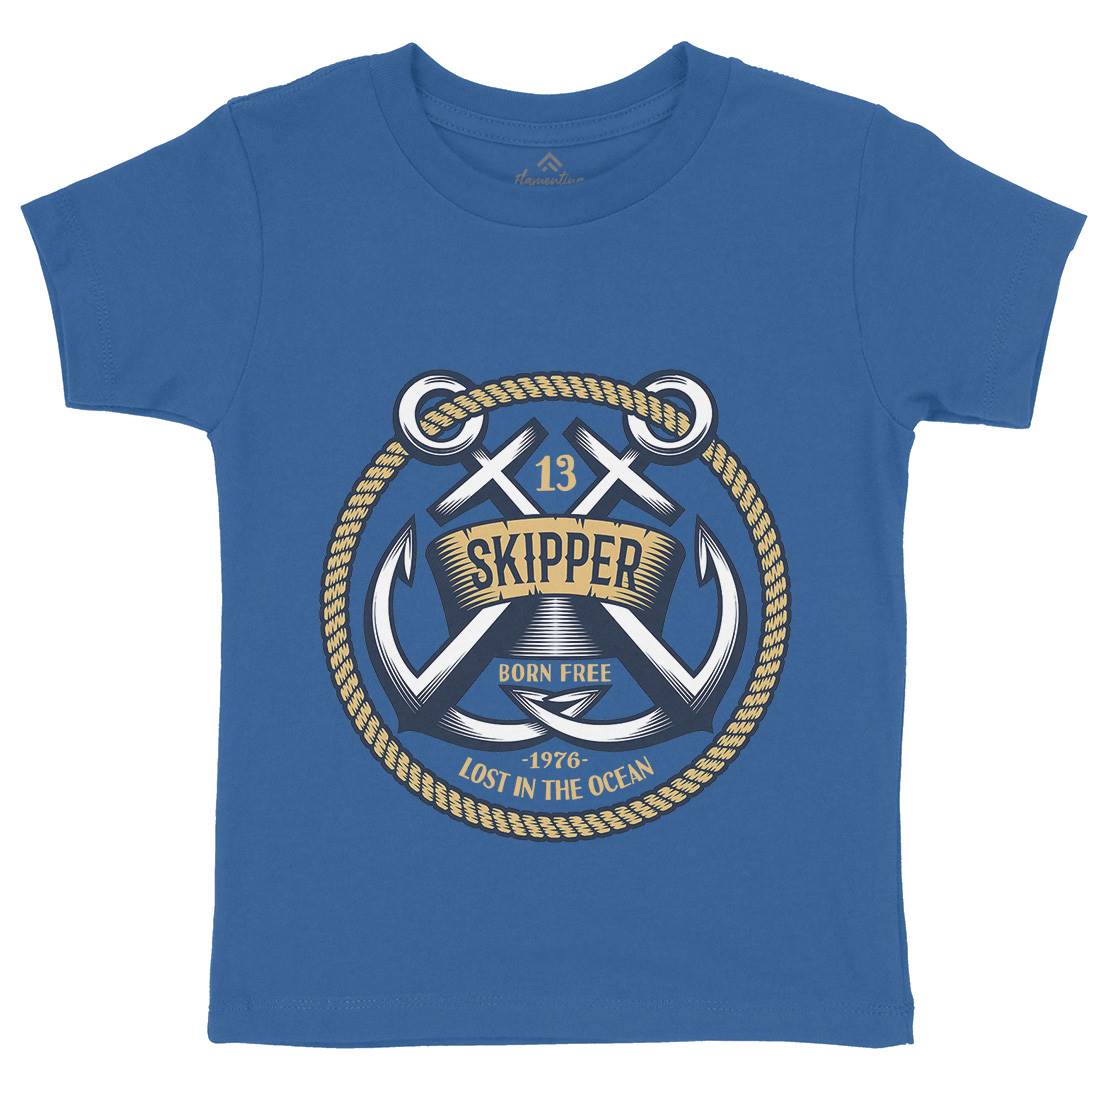 Skipper Kids Organic Crew Neck T-Shirt Navy A399